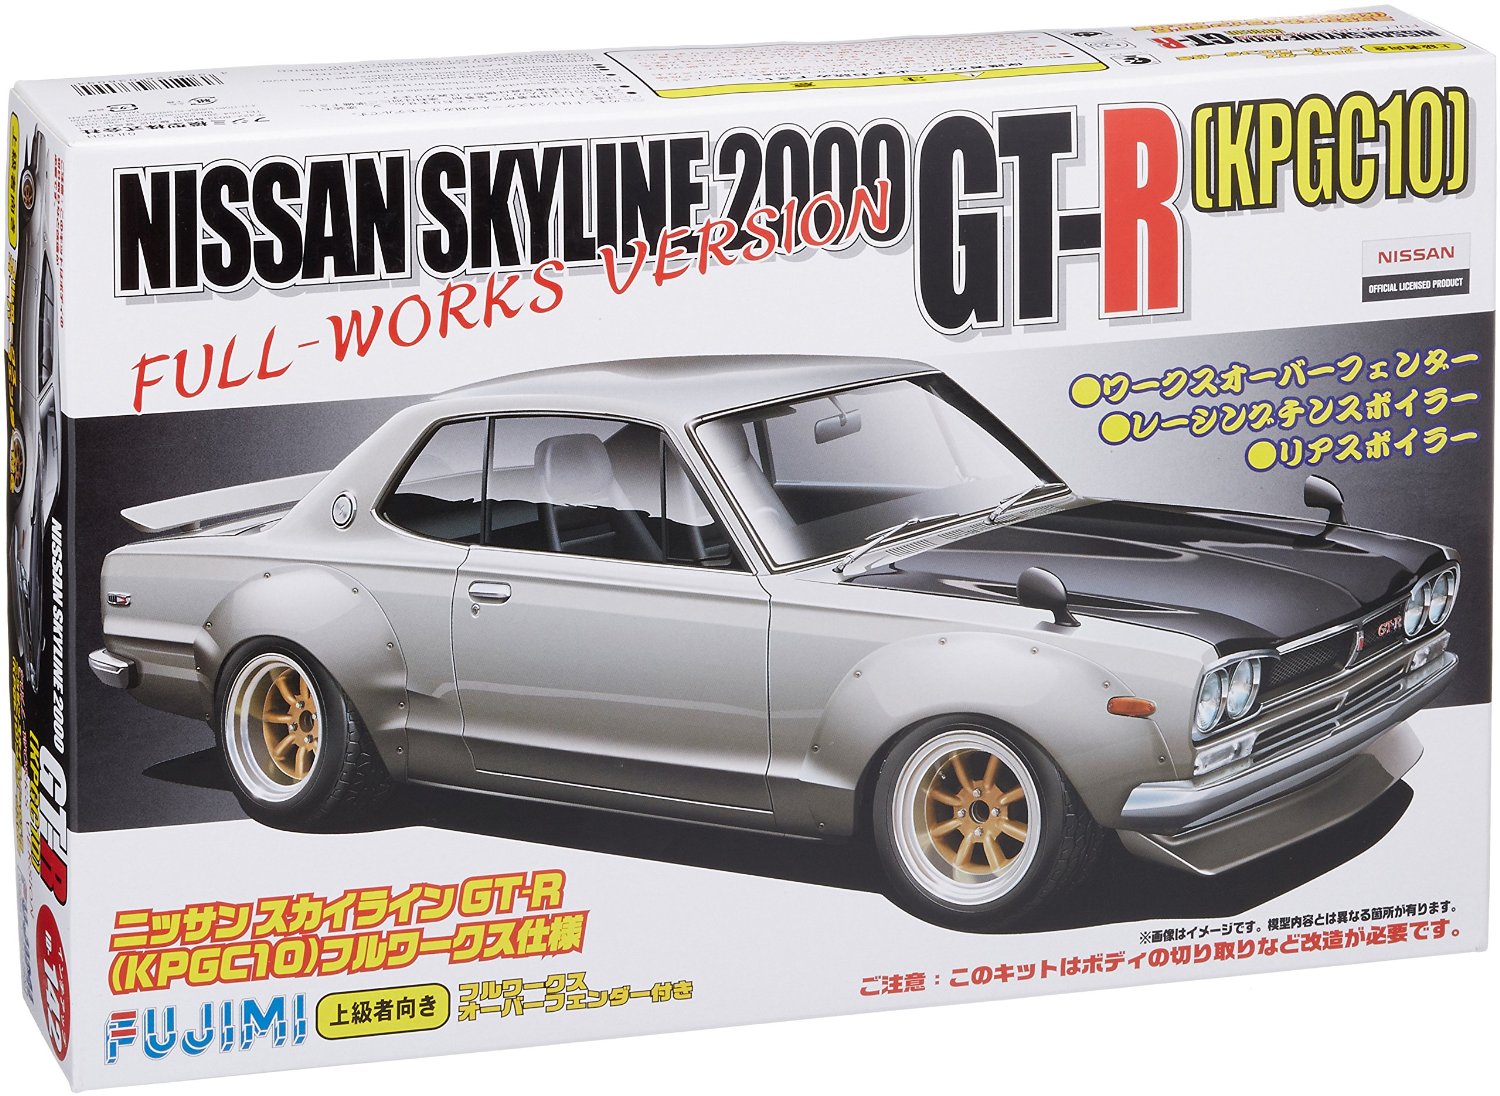 Nissan Skyline KPGC10 Hakoska Full-Works Ver